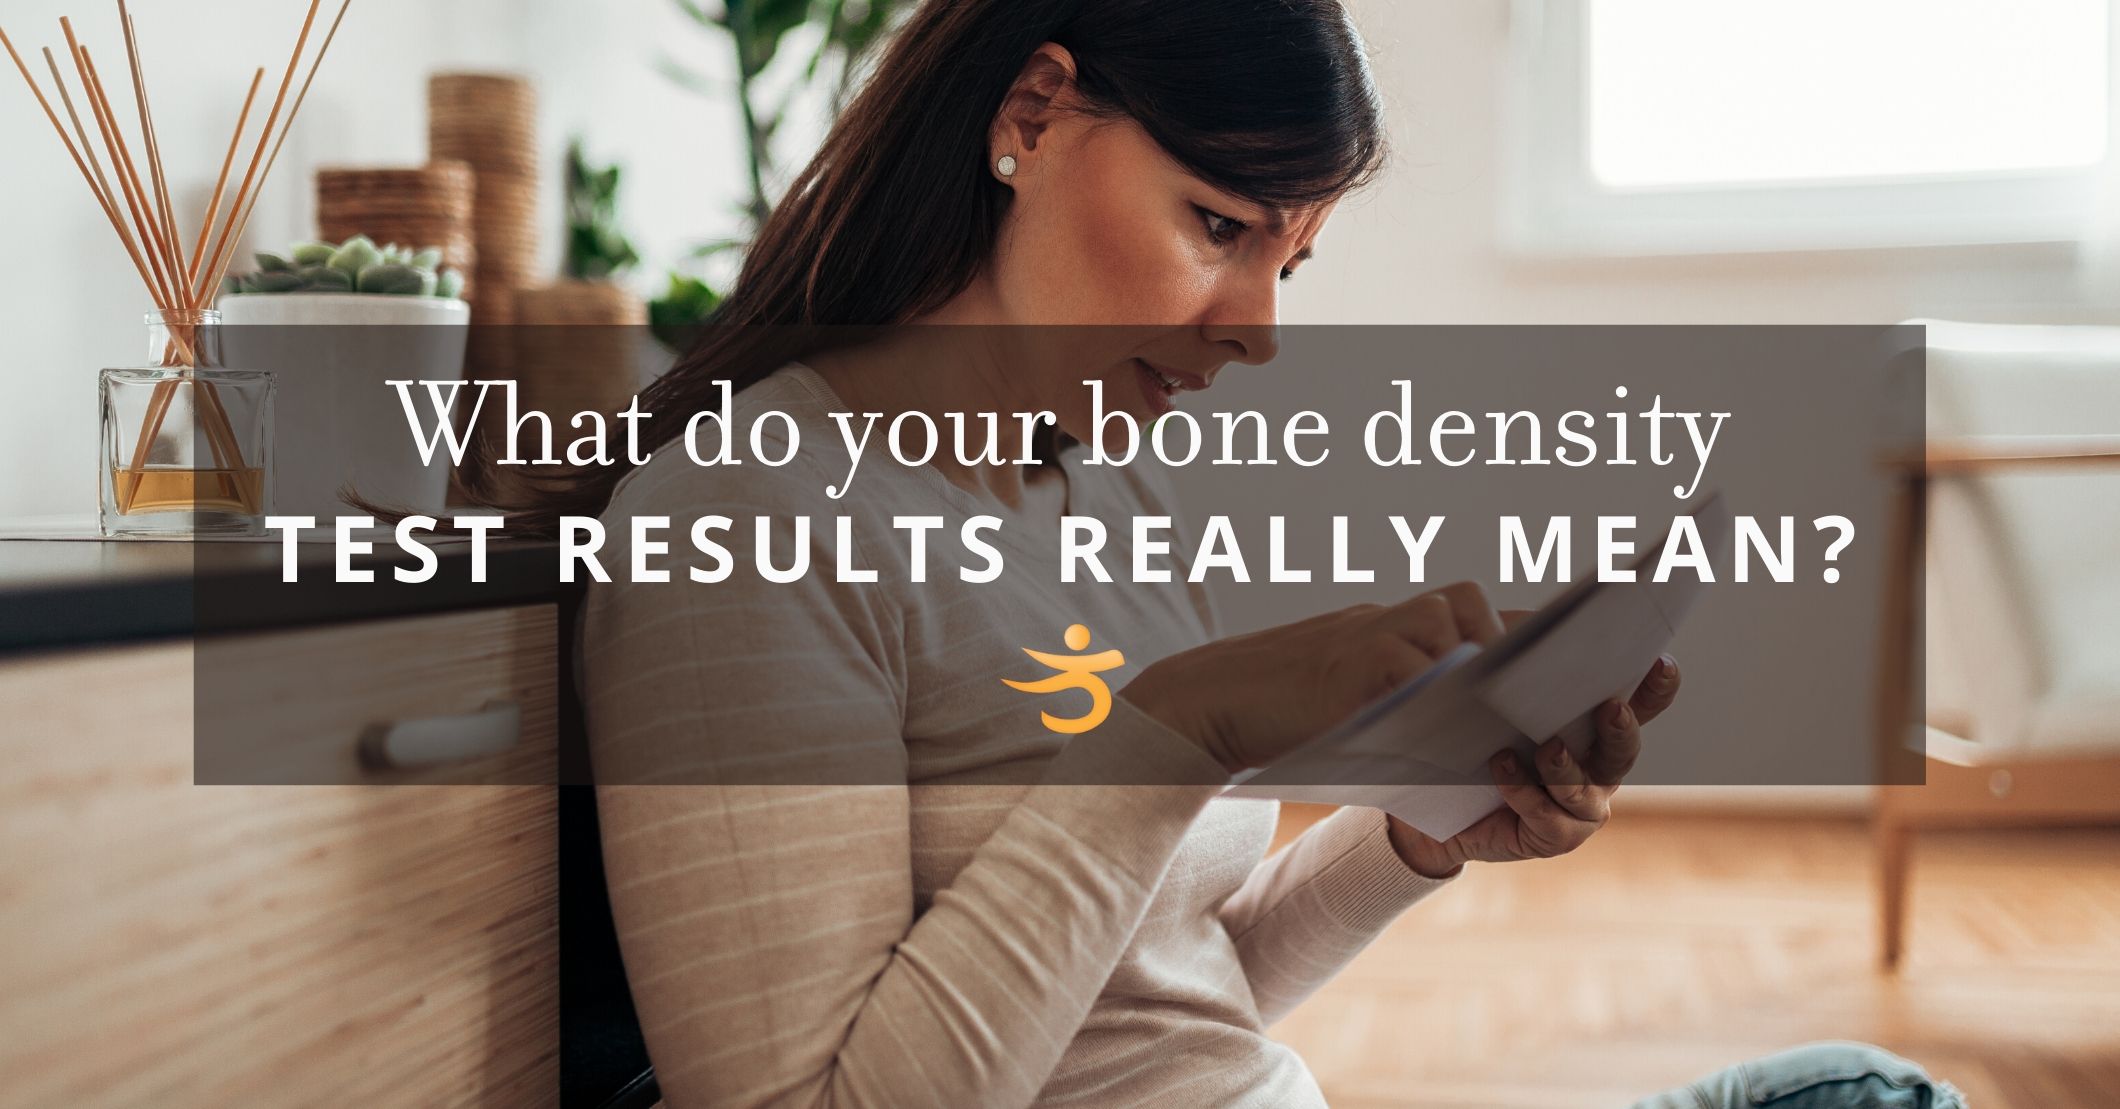 bone density test results BB Blog 4 20 - Better Bones